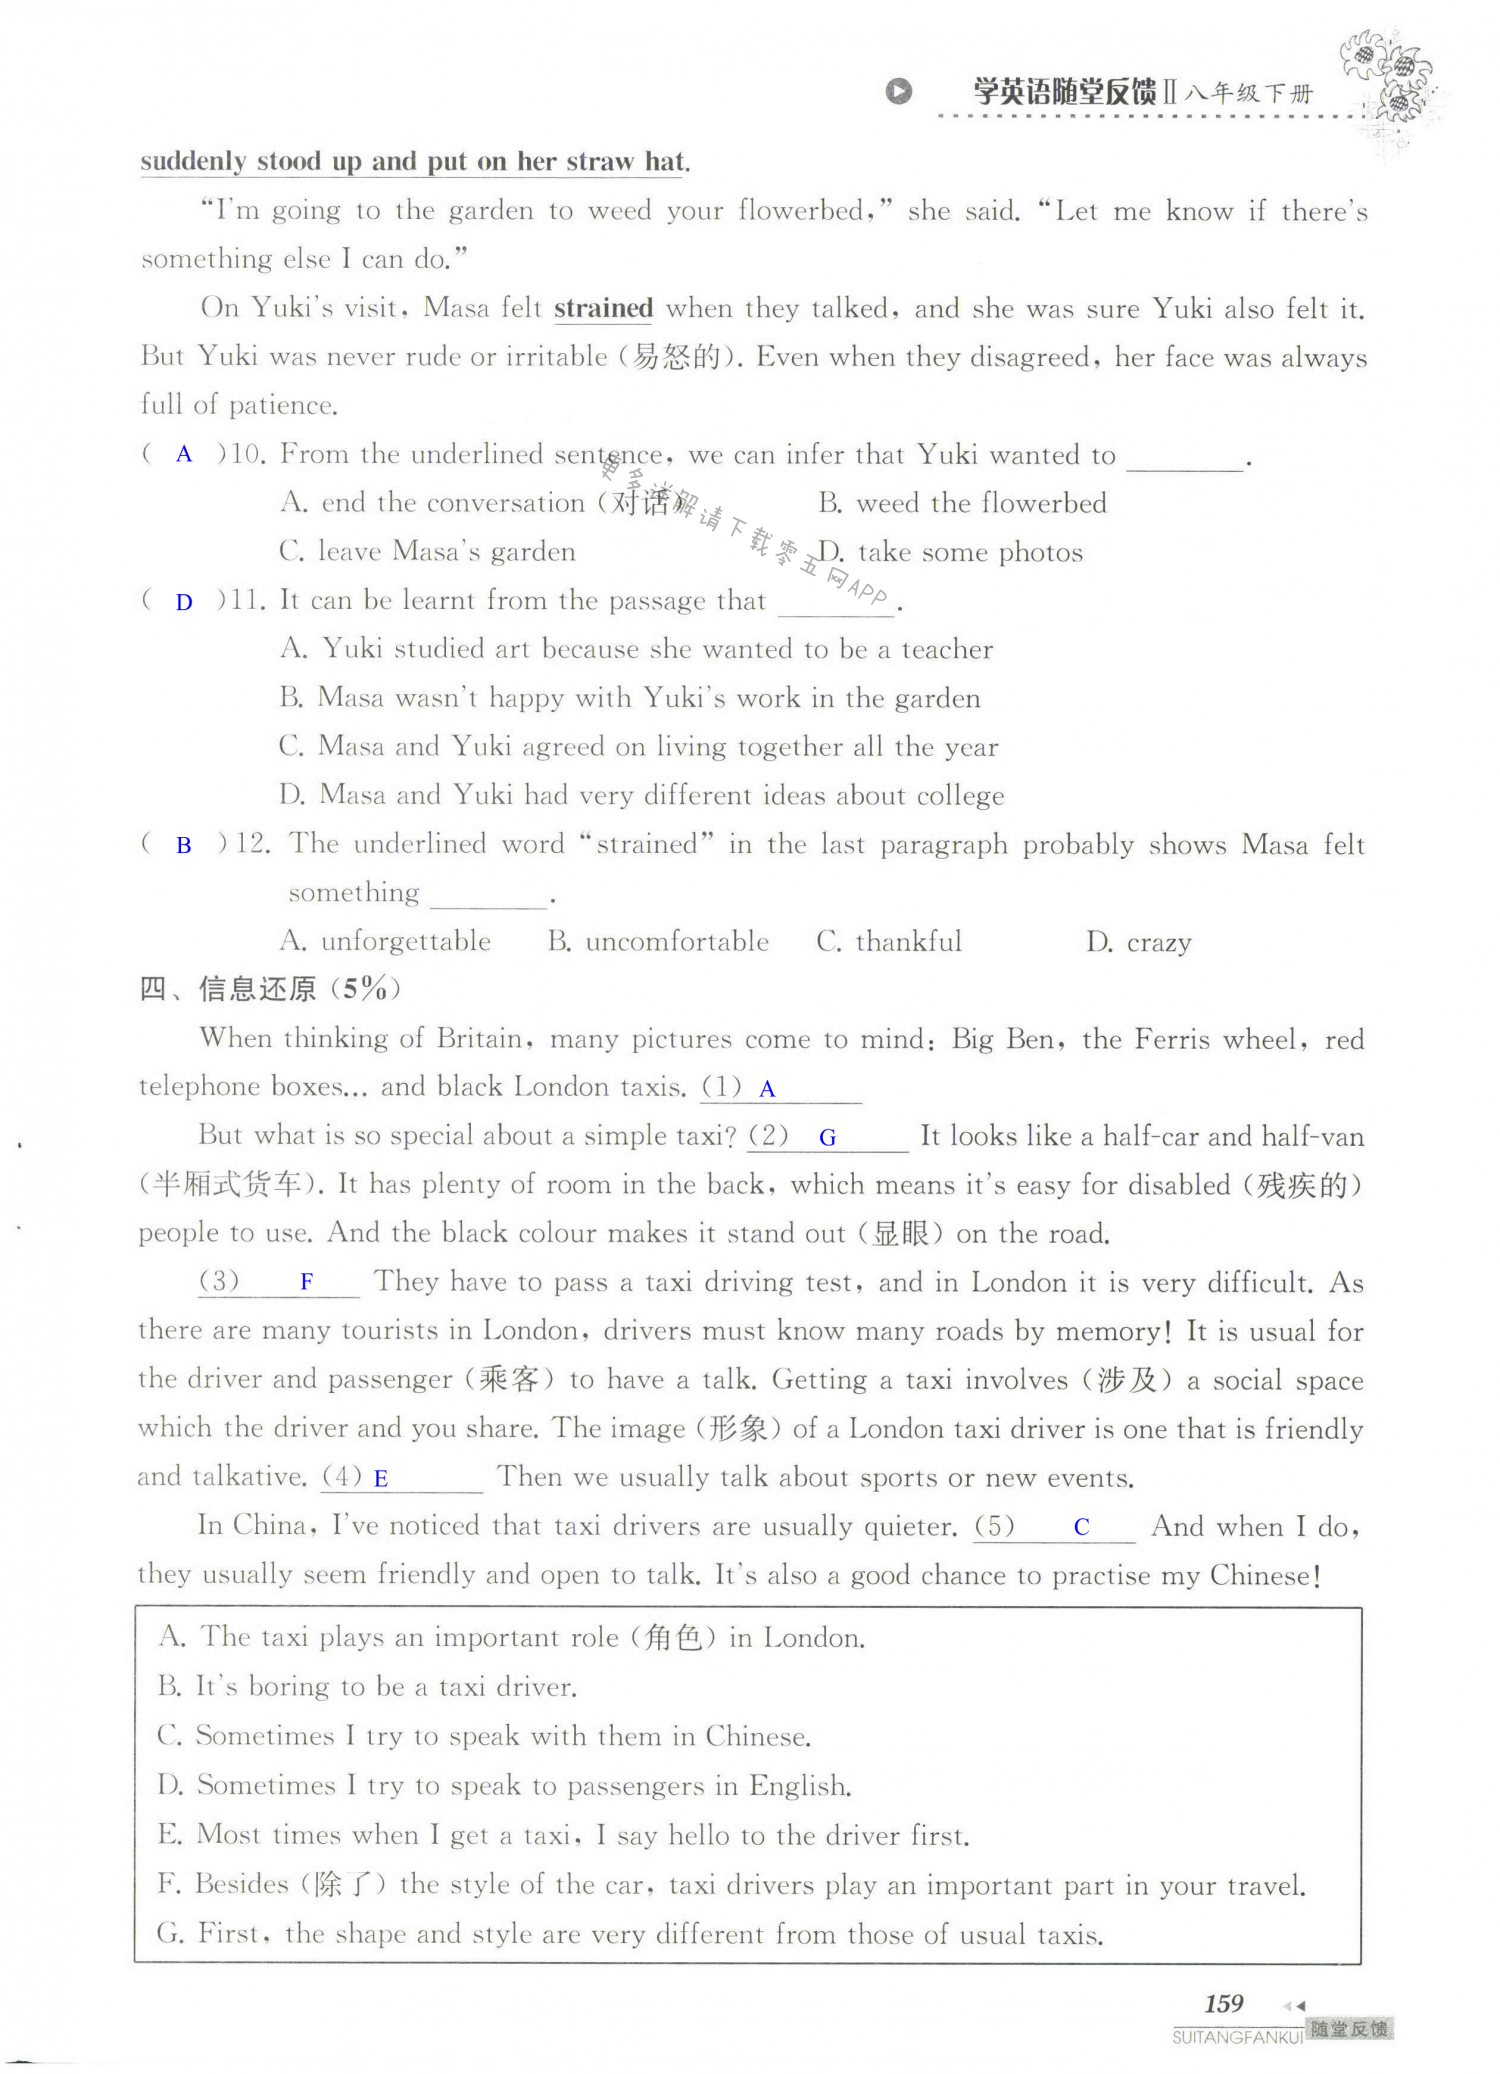 单元综合测试卷 Test for Unit 2 of 8B - 第159页